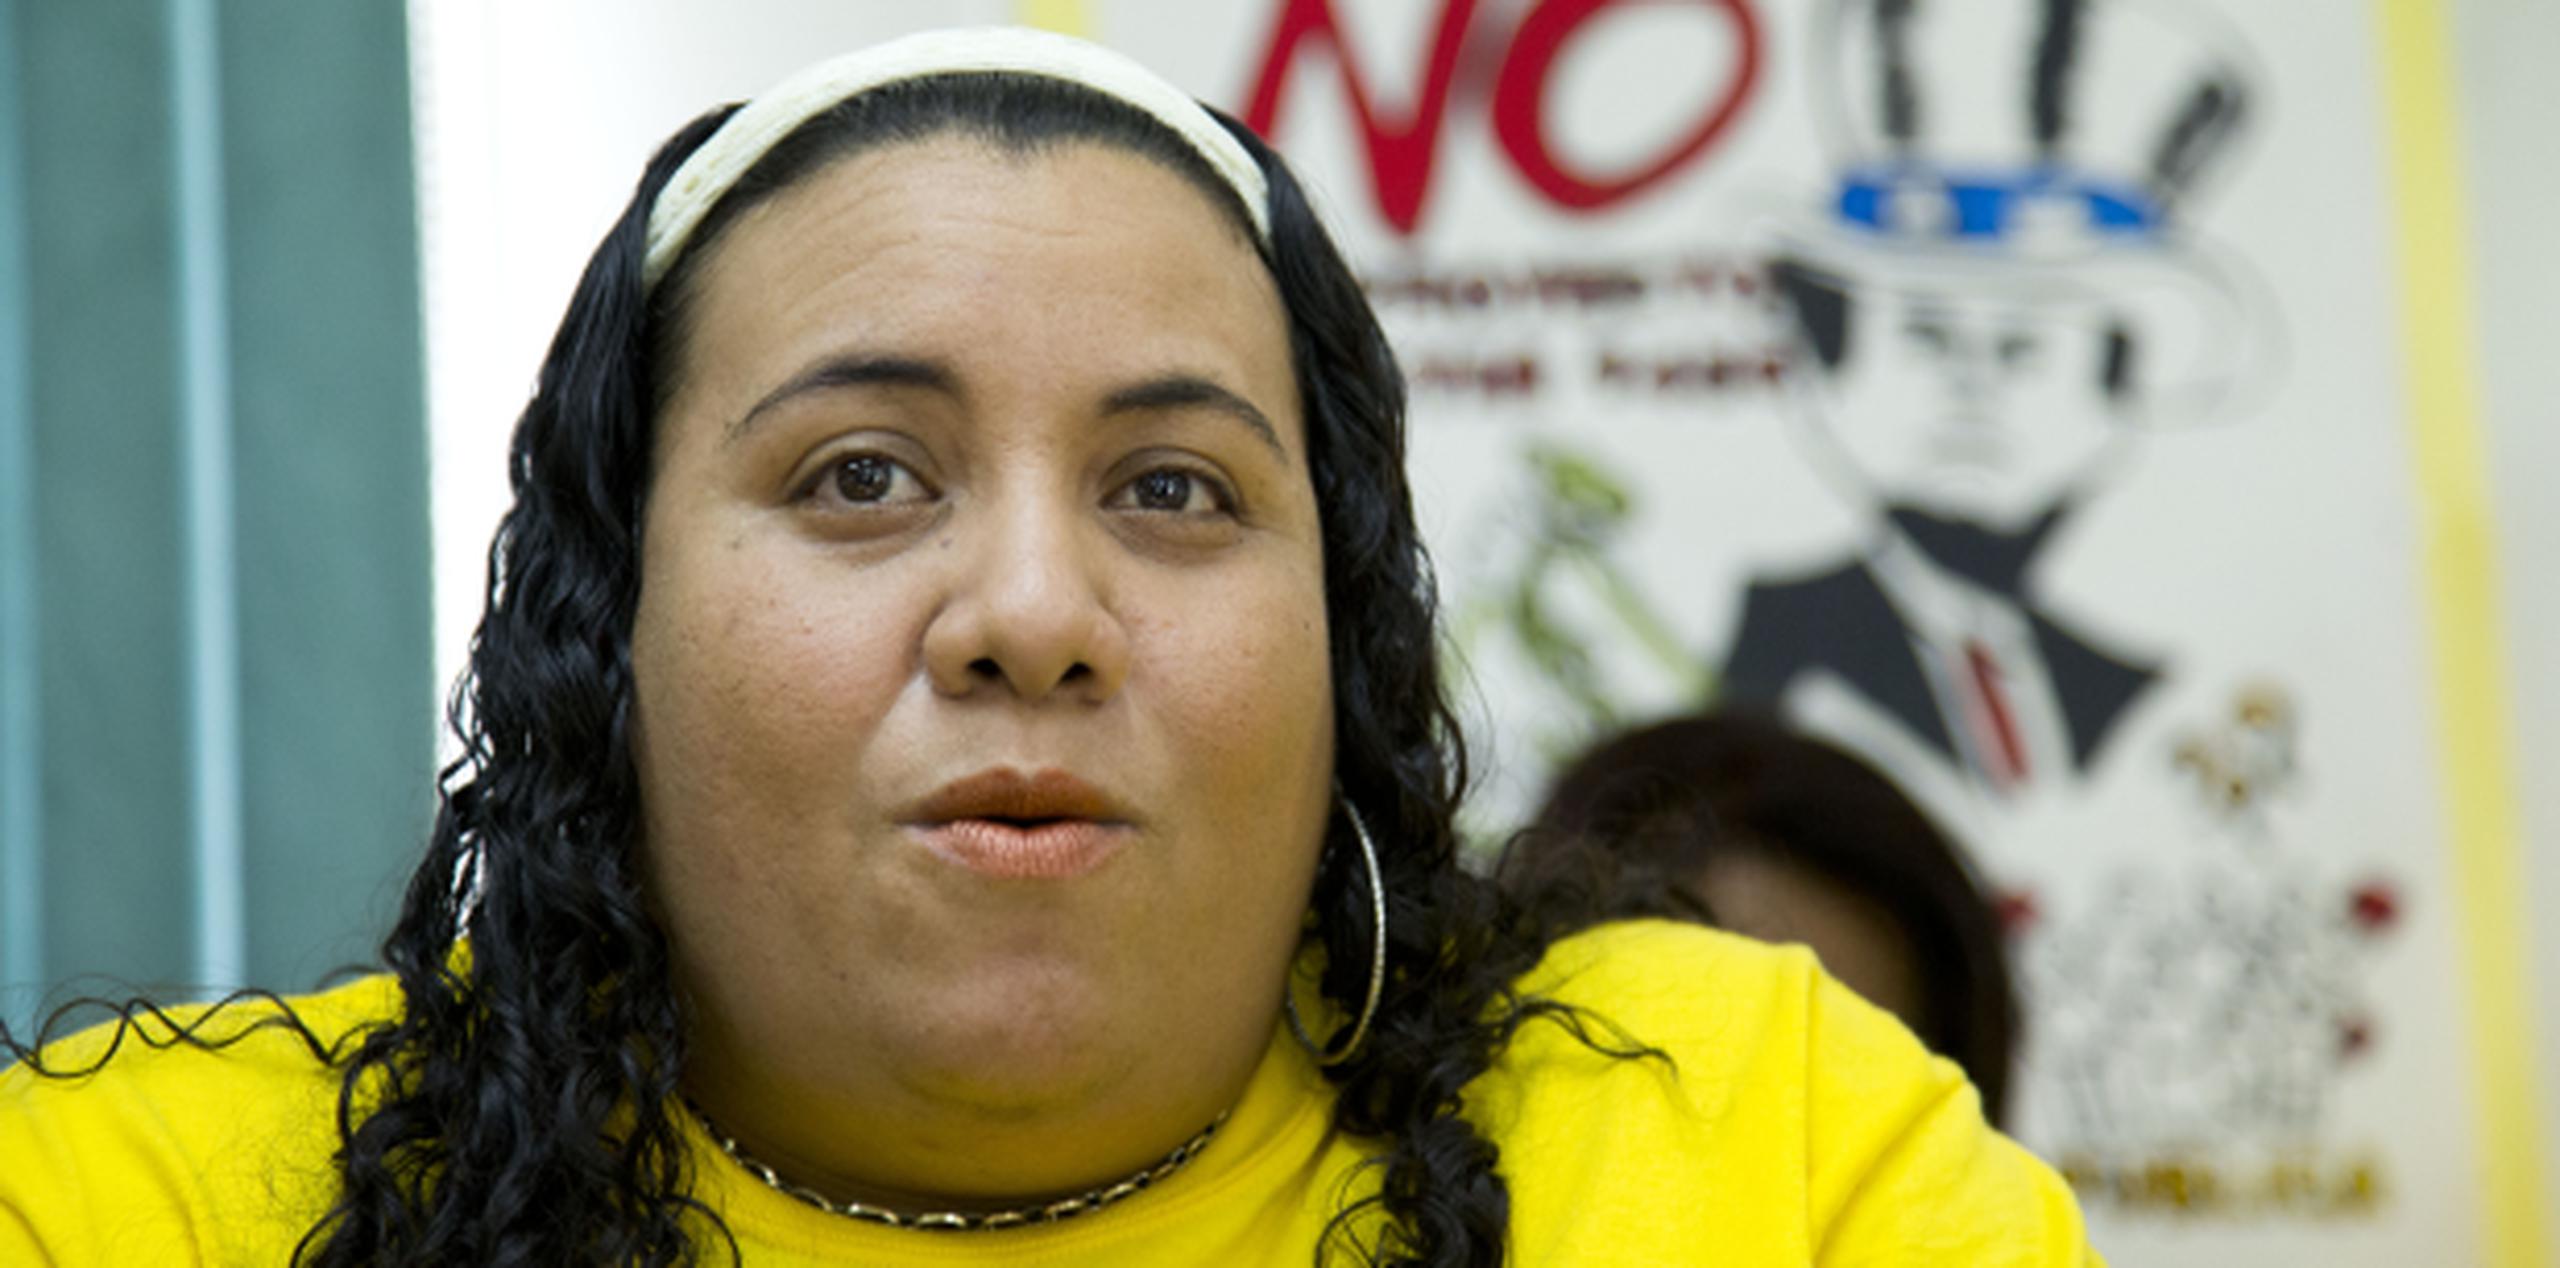 Mercedes Martínez, presidenta de la Federación de Maestros, dijo que pronto estarían realizando asambleas para delinear planes de lucha contra la propuesta de implantación de escuelas "charter". (Archivo)